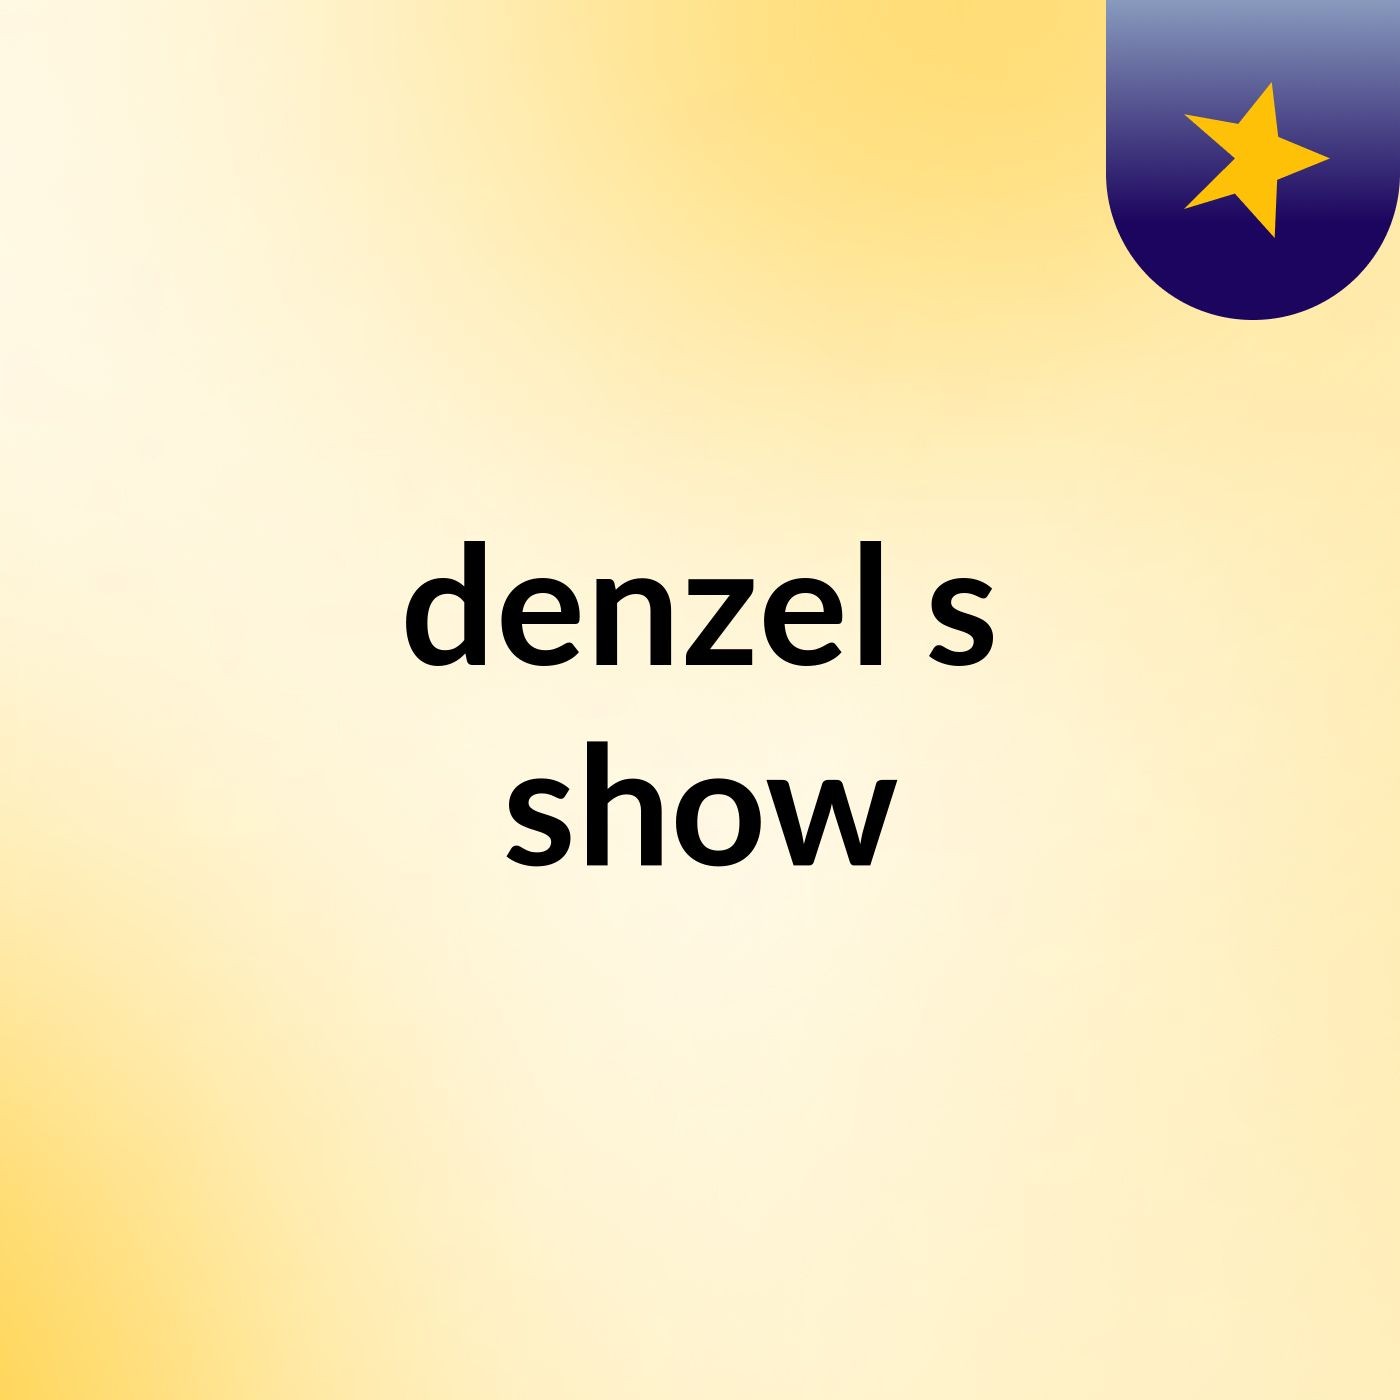 denzel's show